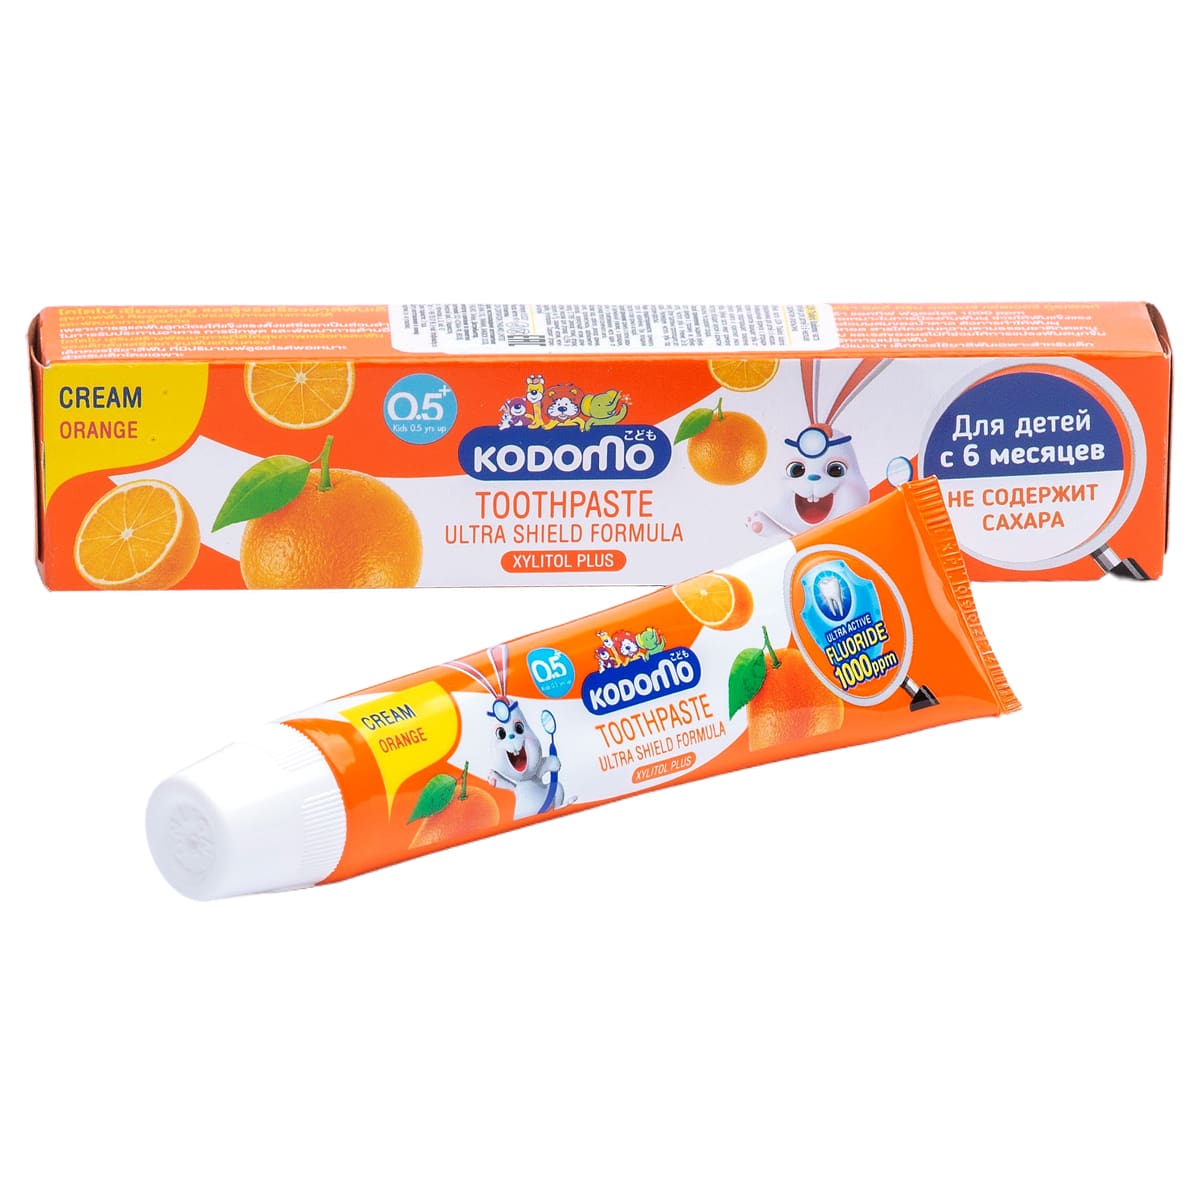 Lion Thailand Зубная паста для детей с 6 месяцев с ароматом апельсина, 40 г (Lion Thailand, Kodomo)